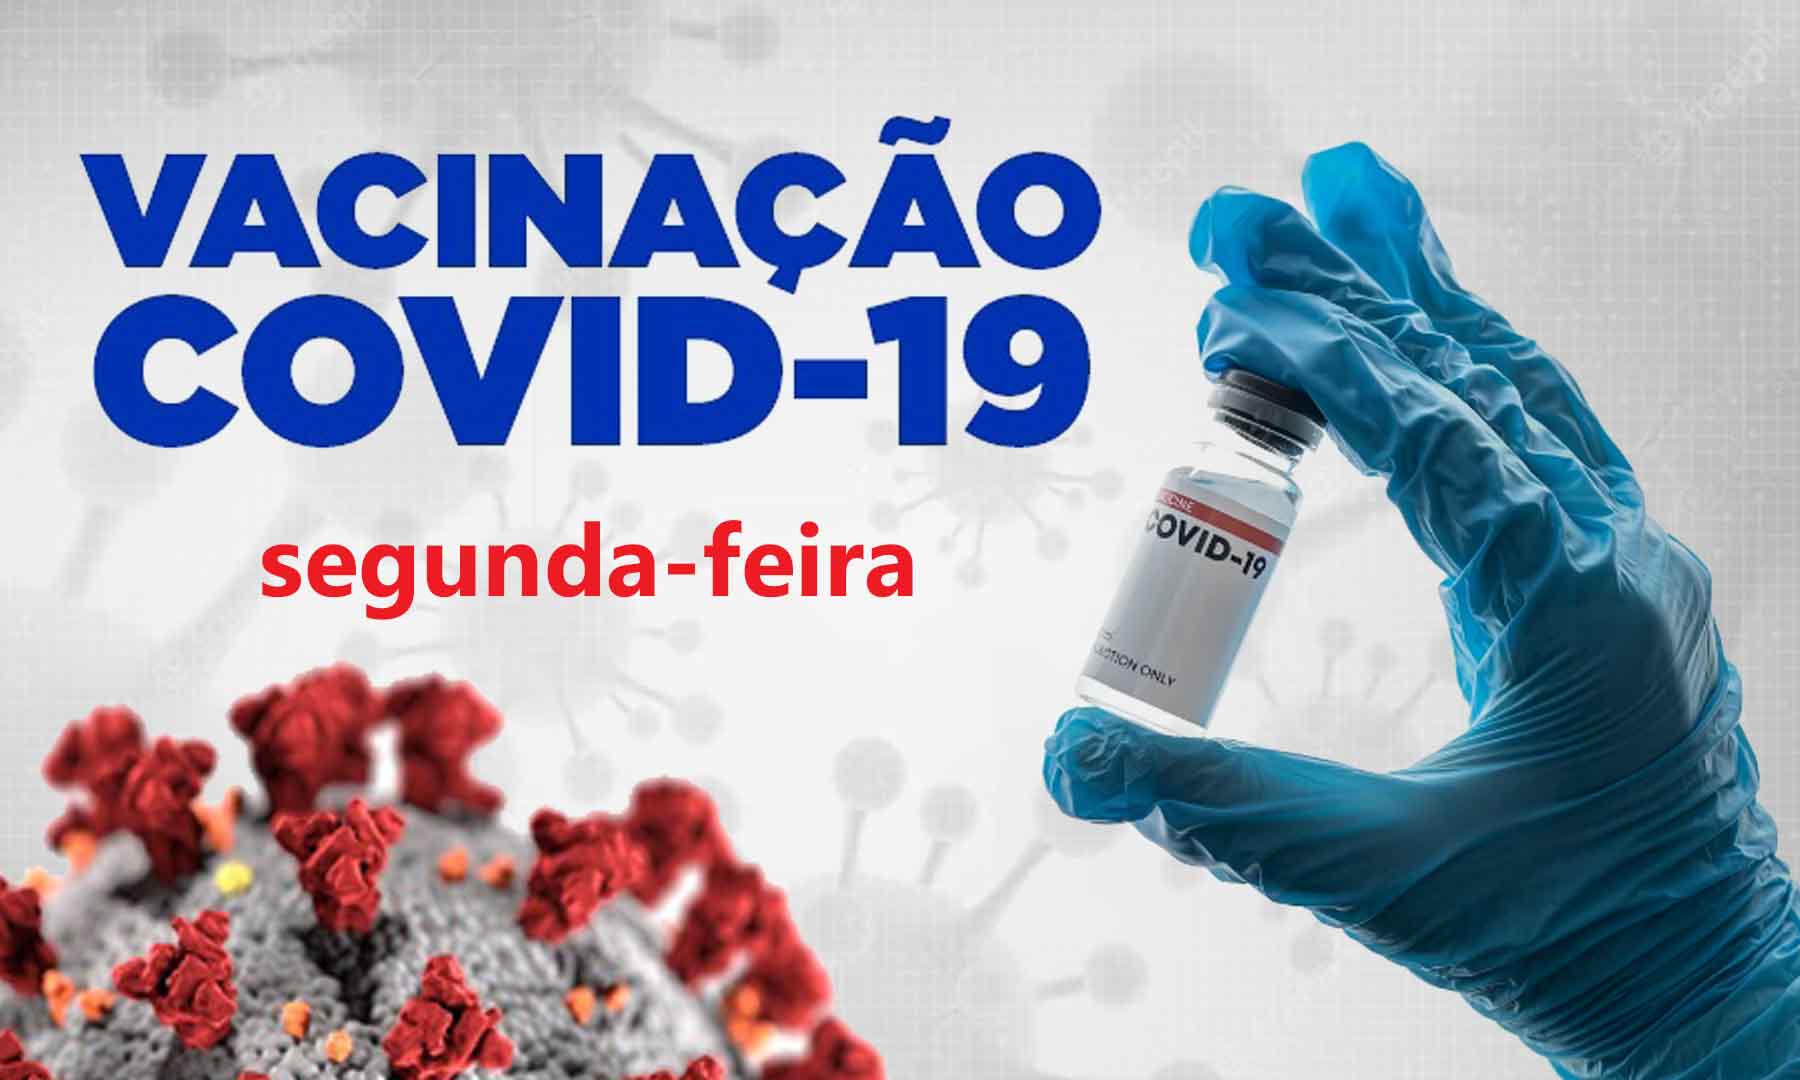 VACINAÇÃO COVID-19 - SEGUNDA-FEIRA